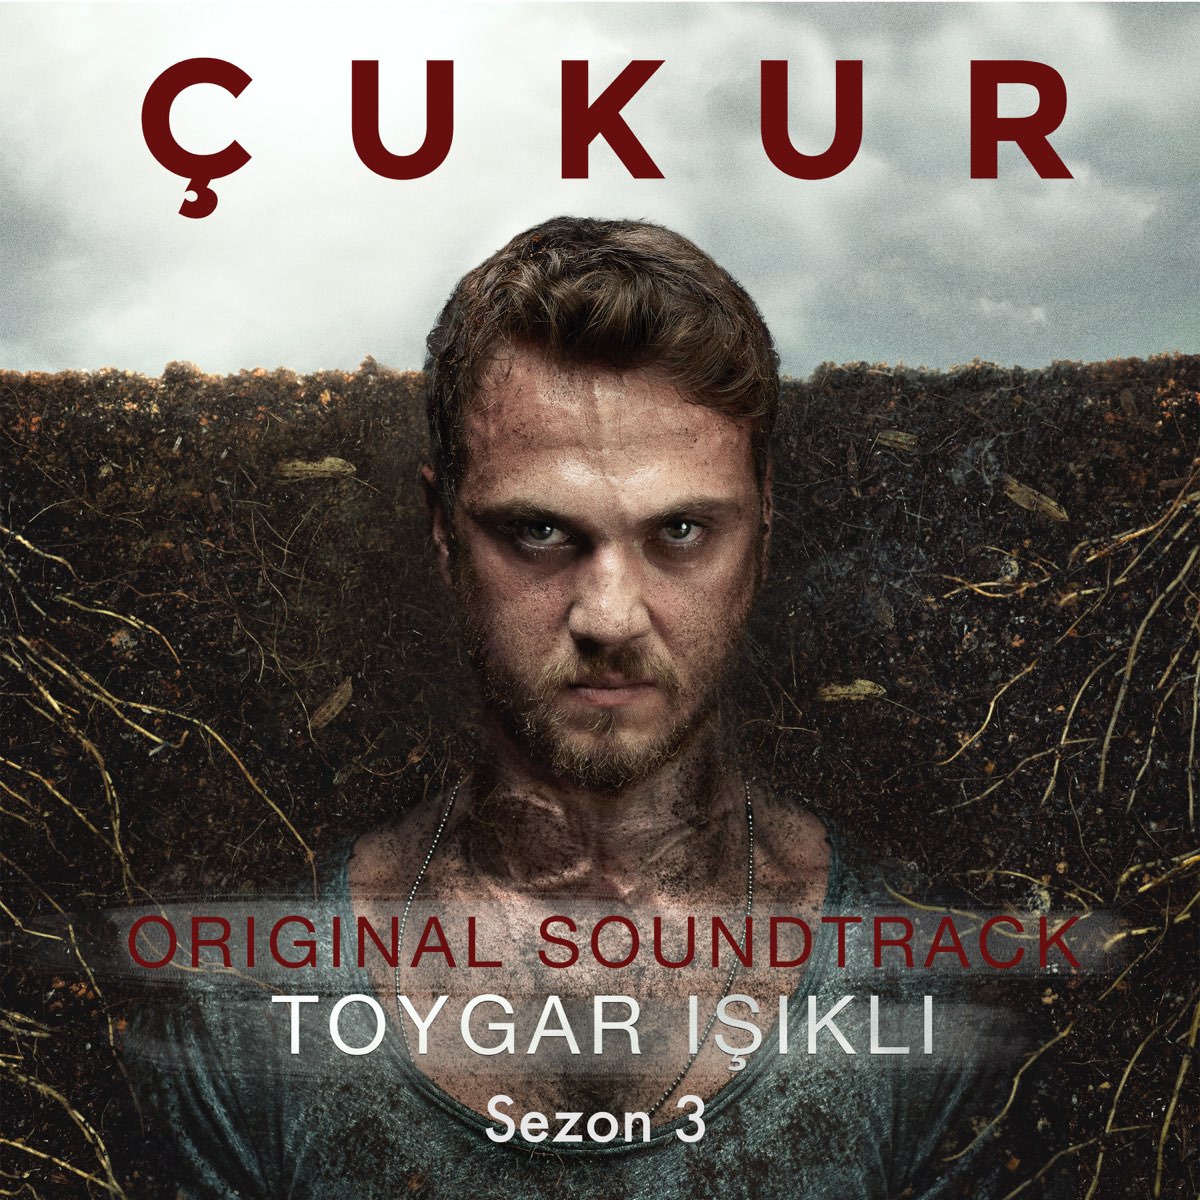 Çukur: Sezon 3 (Original Soundtrack) - Album by Toygar Işıklı - Apple Music